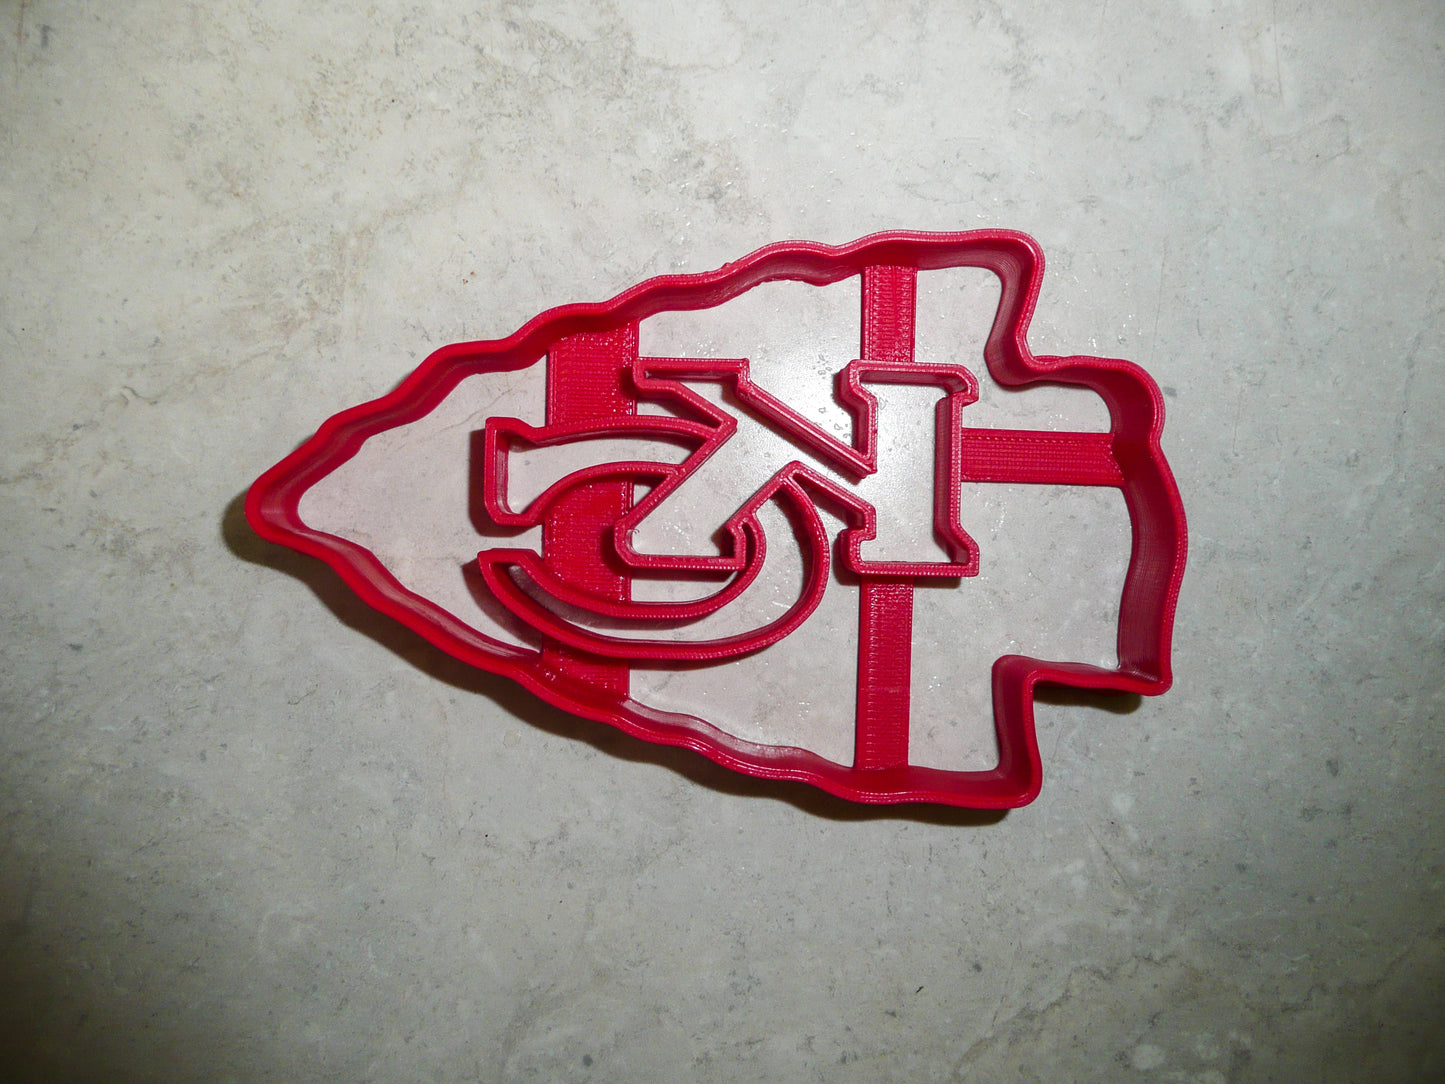 Kansas City Chiefs KC Football Cookie Cutter Made in USA PR975